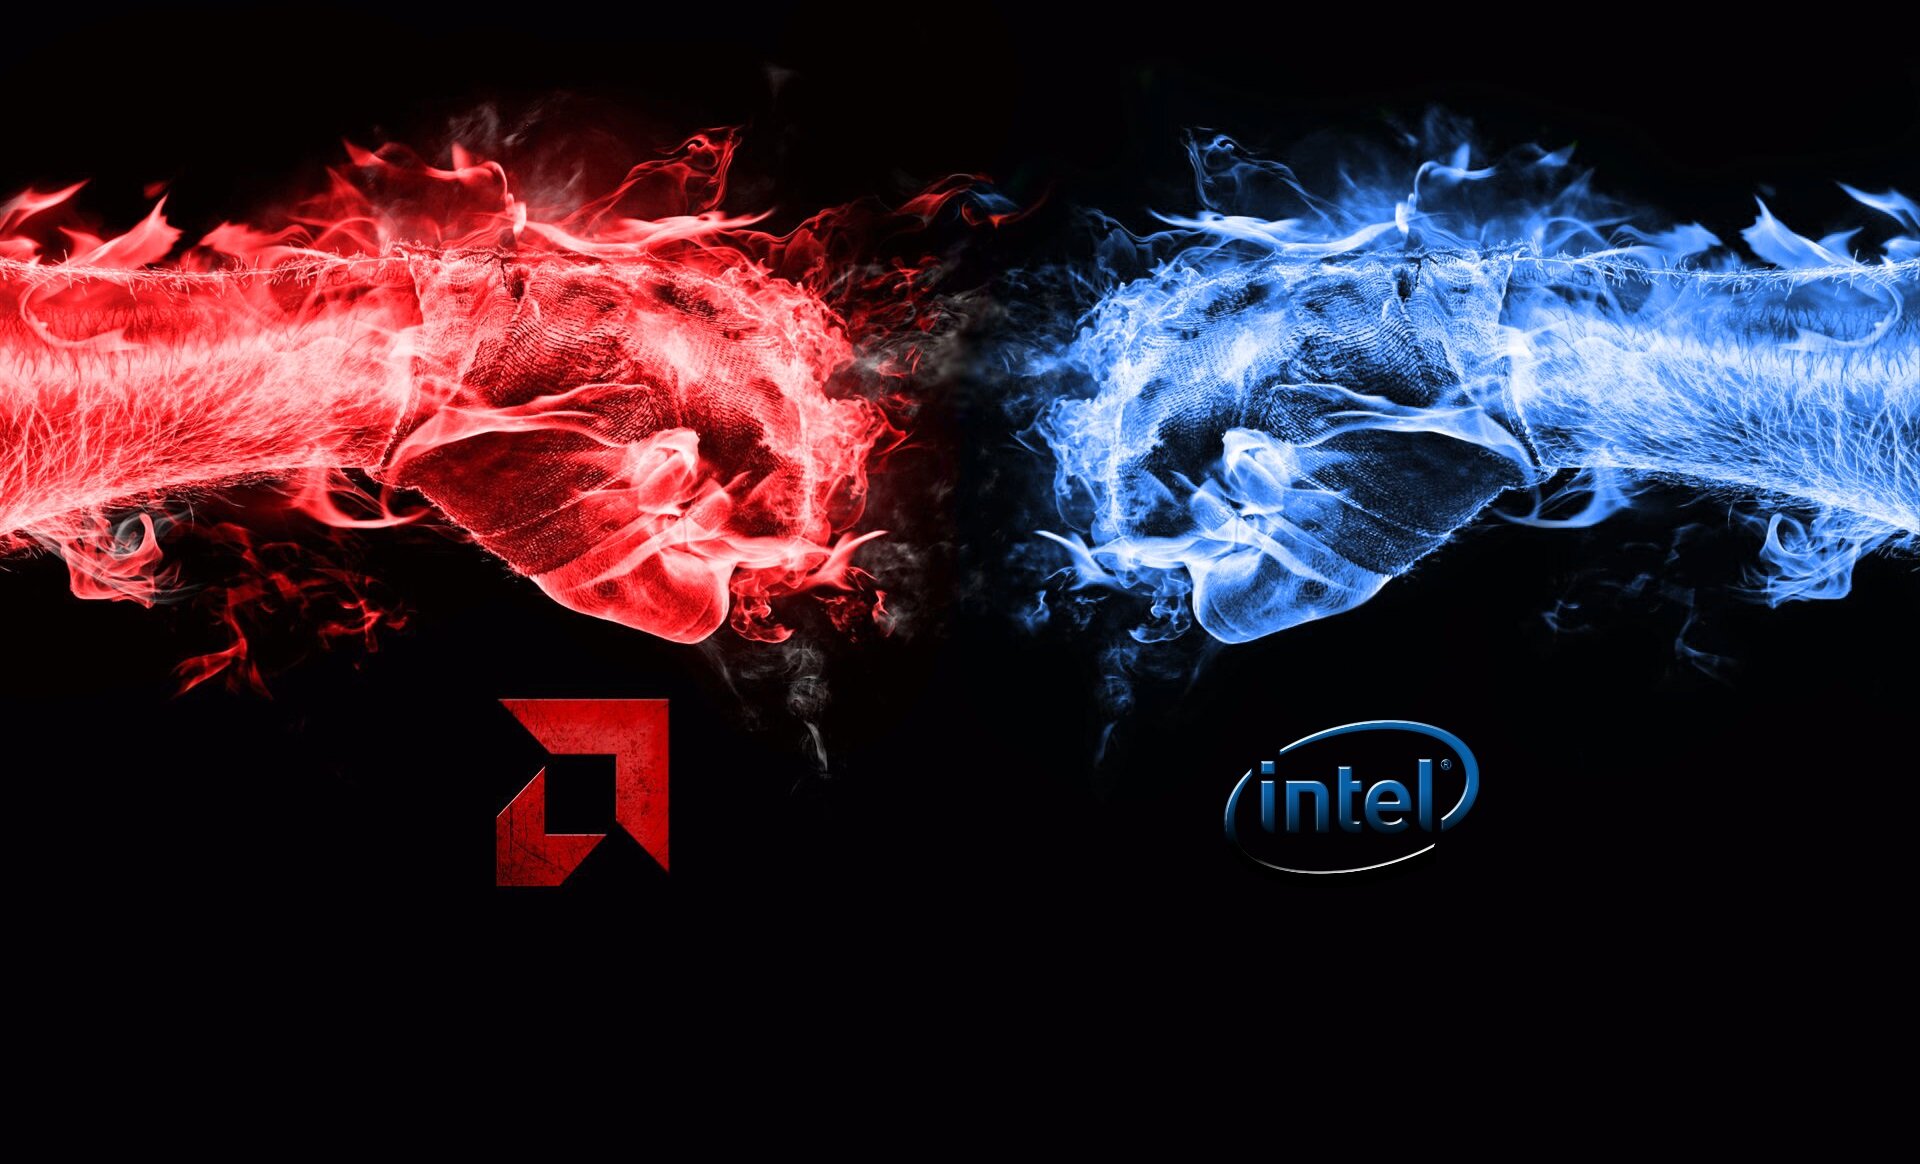 Η Intel λέει ότι έχει καλύτερους επεξεργαστές αλλά η AMD έκανε πολύ καλή δουλειά